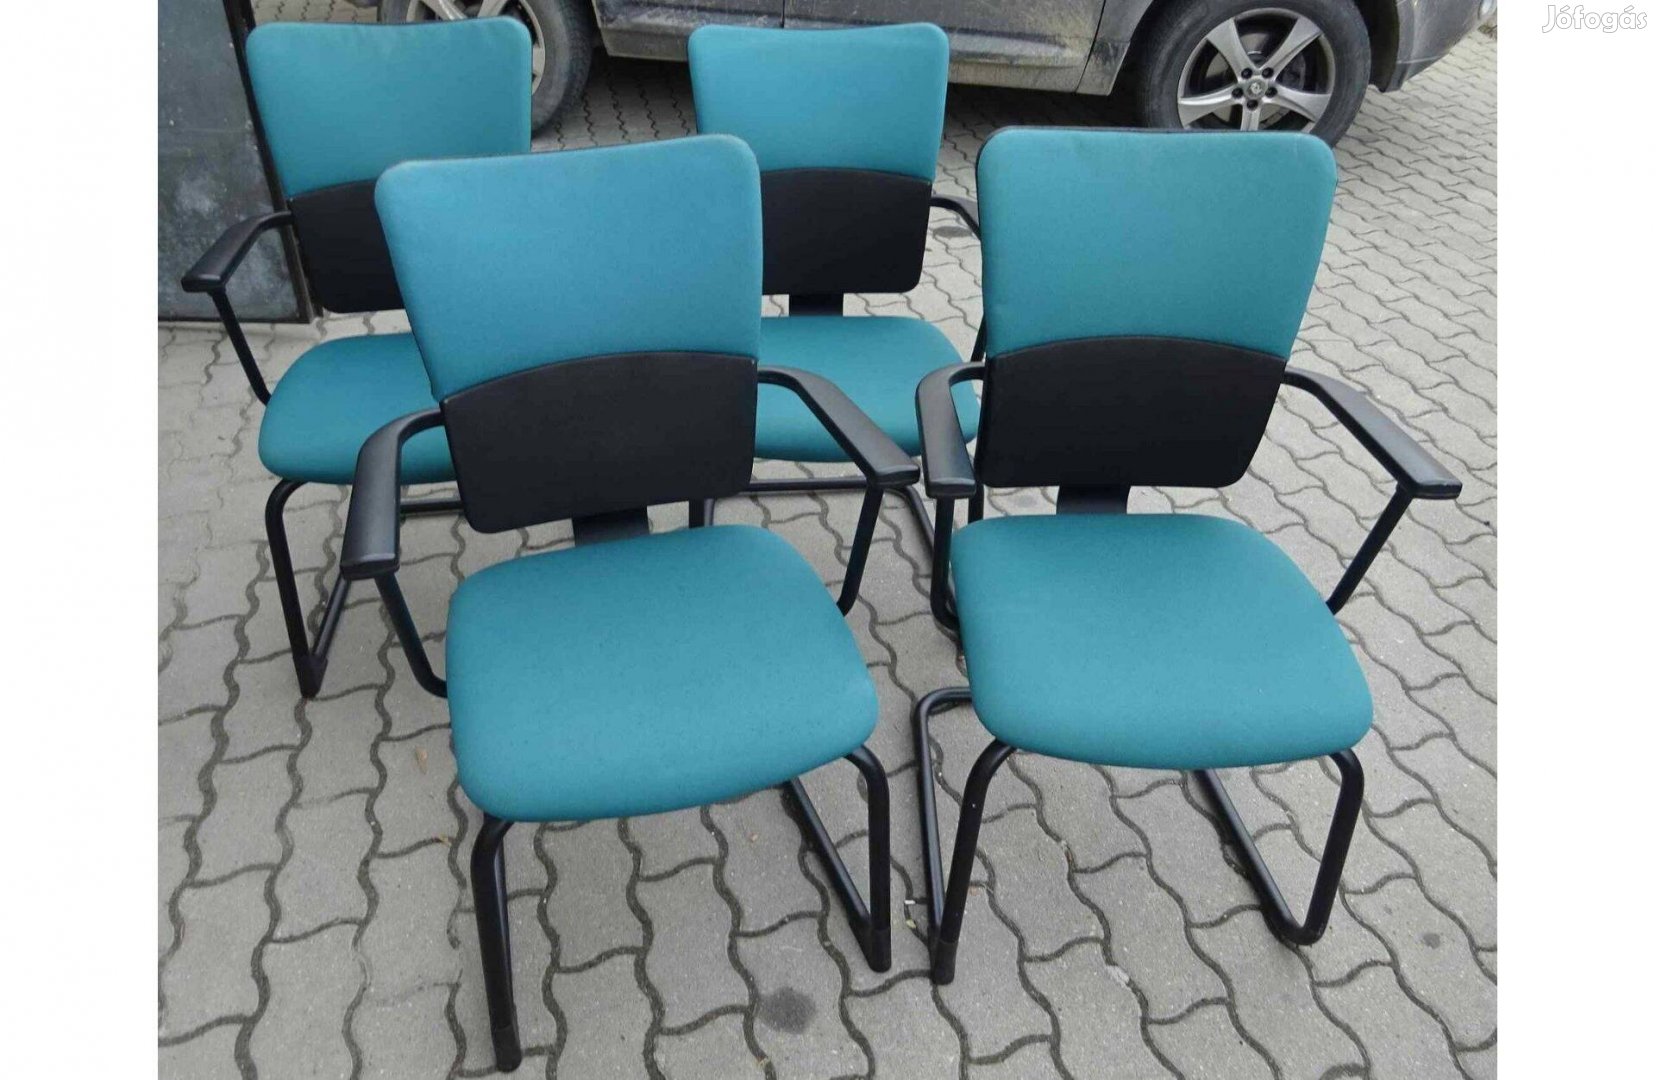 Kék-szürke tárgyalószék, konferencia szék, Steelcase márka, használt